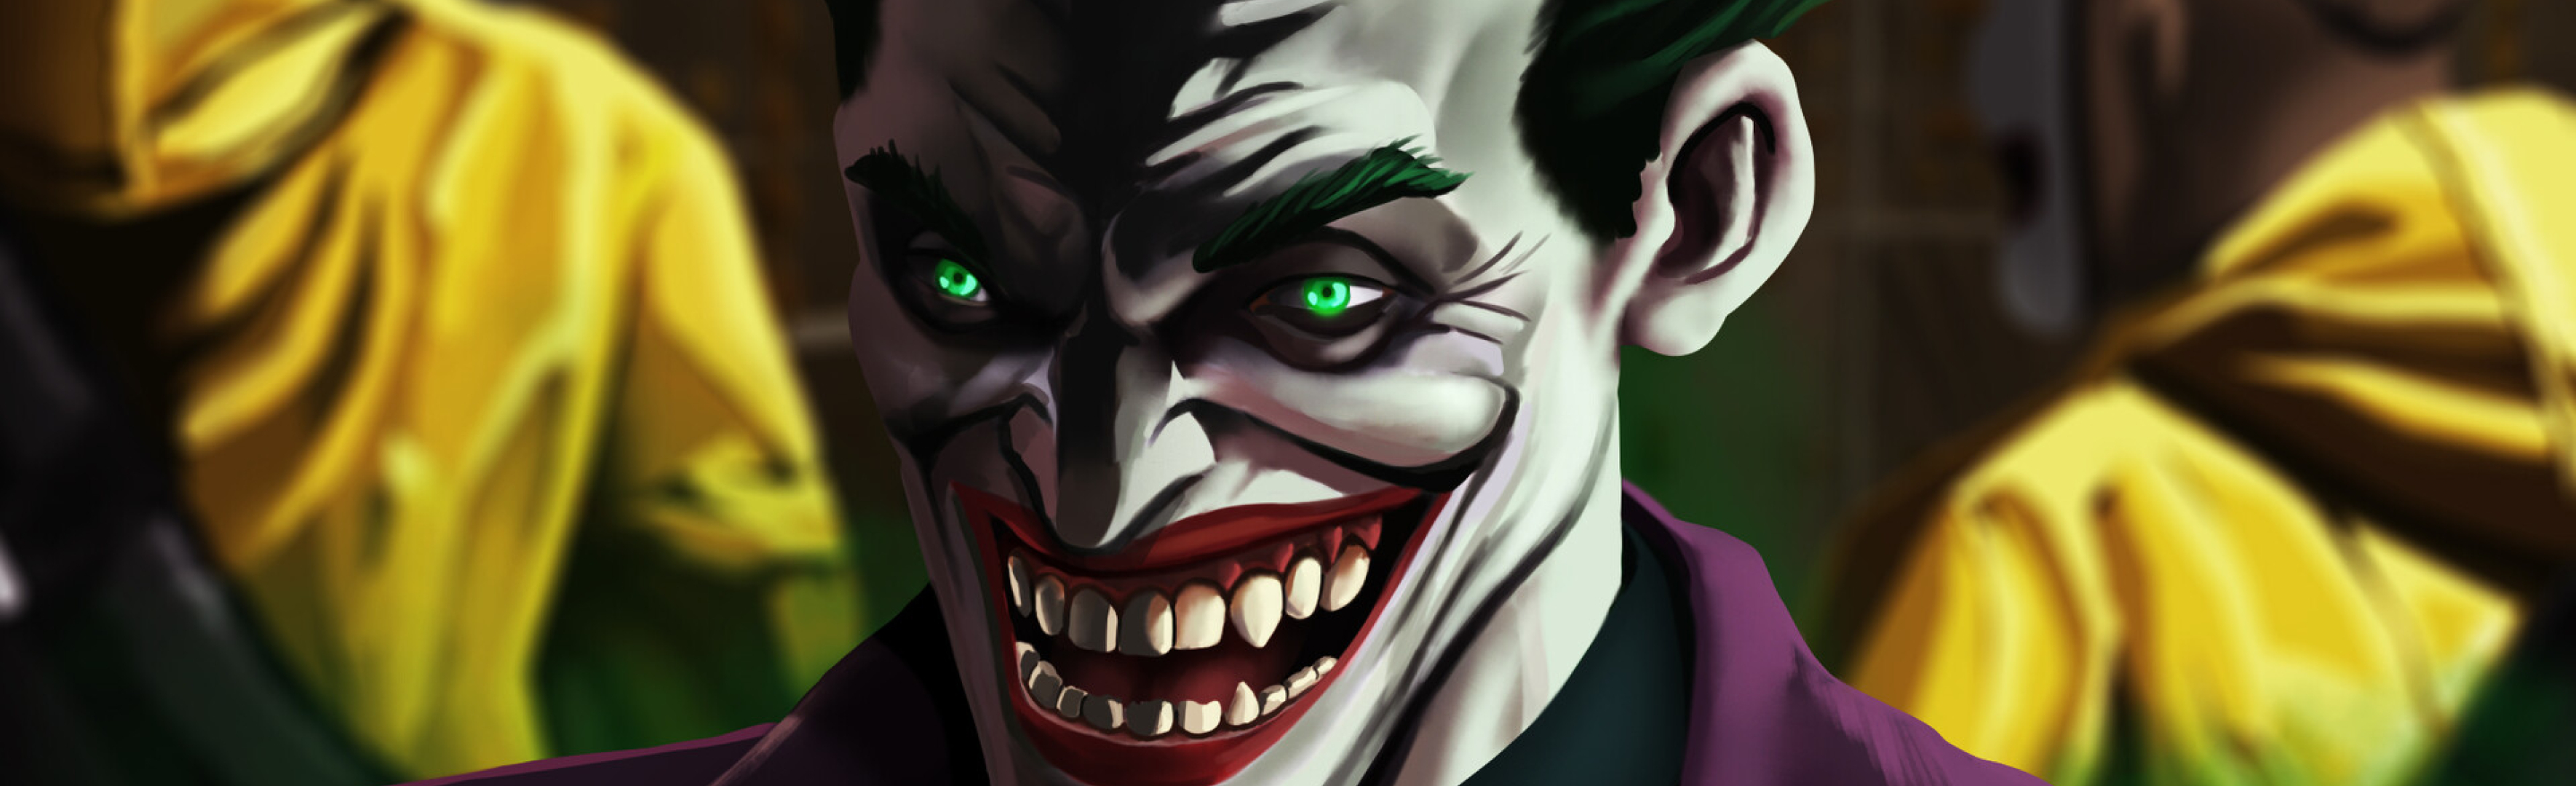 3540x1080 Resolution An Evil Joker Laugh 3540x1080 Resolution Wallpaper ...